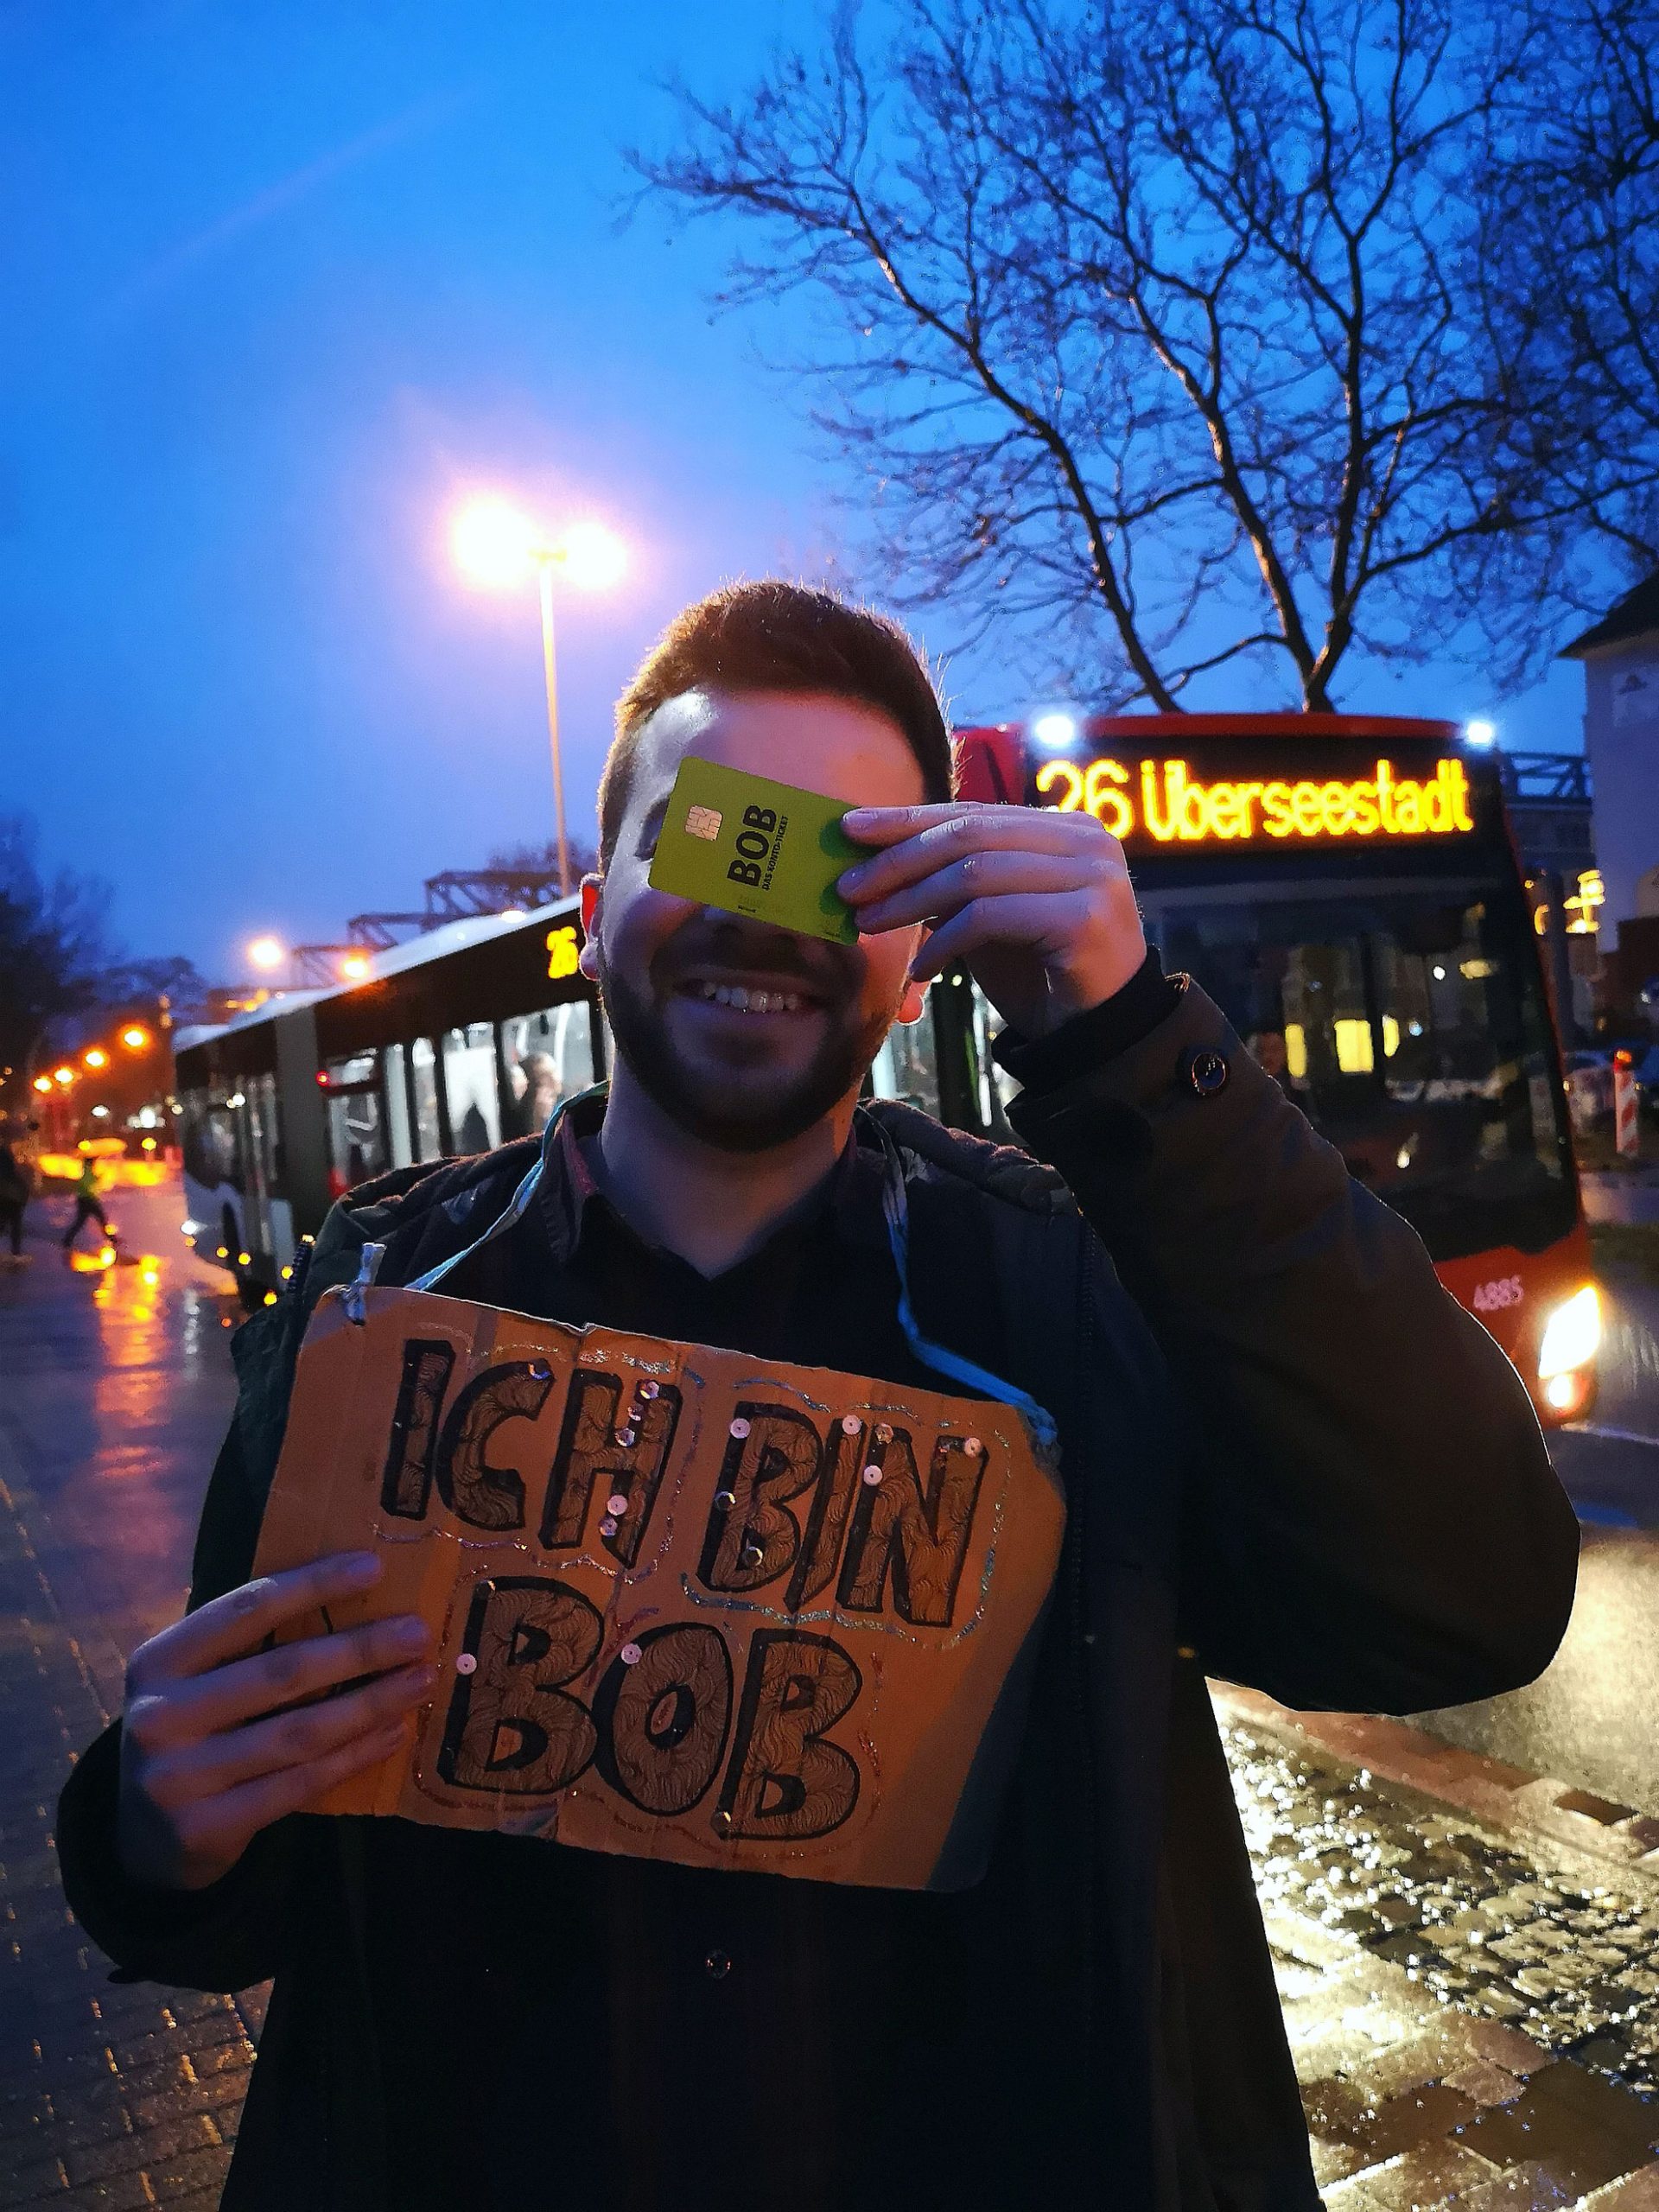 Ein junger Mann hält sich mit seiner linken Hand eine grüne Plastik-Karte im EC-Karten-Format vor die Augen: Das BOB-Konto-Ticket der BSAG. Mit der anderen Hand hält er sich ein Pappschild vor die Brust mit der Aufschrift: "Ich bin BOB". Im Hintergrund fährt ein BSAG-Gelenkbus Linie 26 Überseestadt.